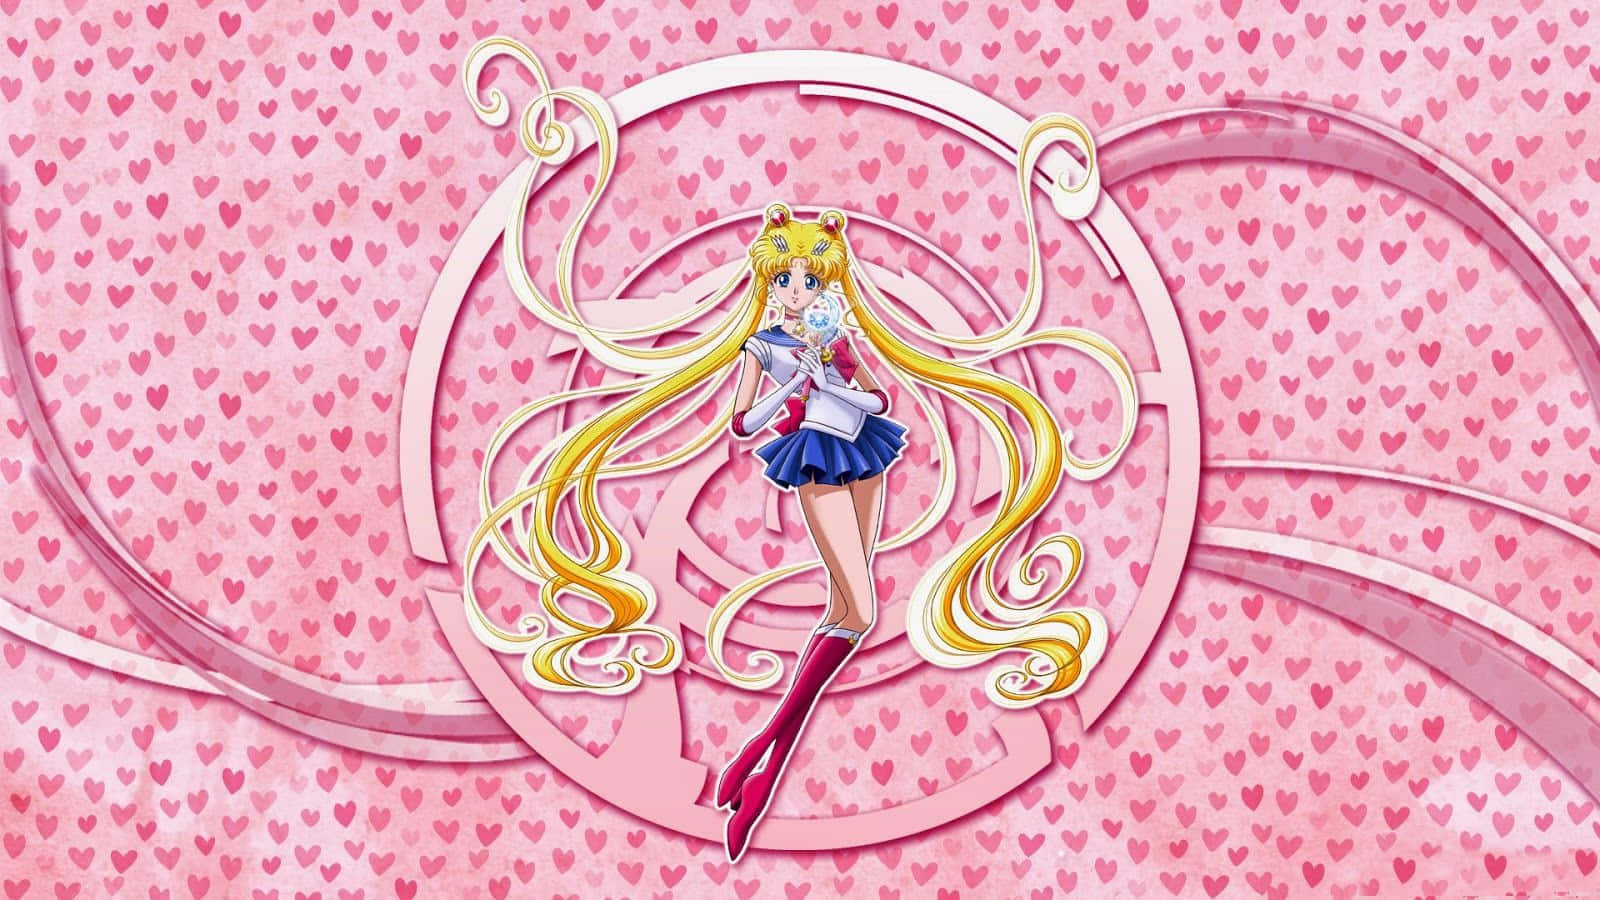 Dieheldin Des Ikonischen Anime Sailor Moon Erhält Ein Ästhetisches Upgrade Wallpaper